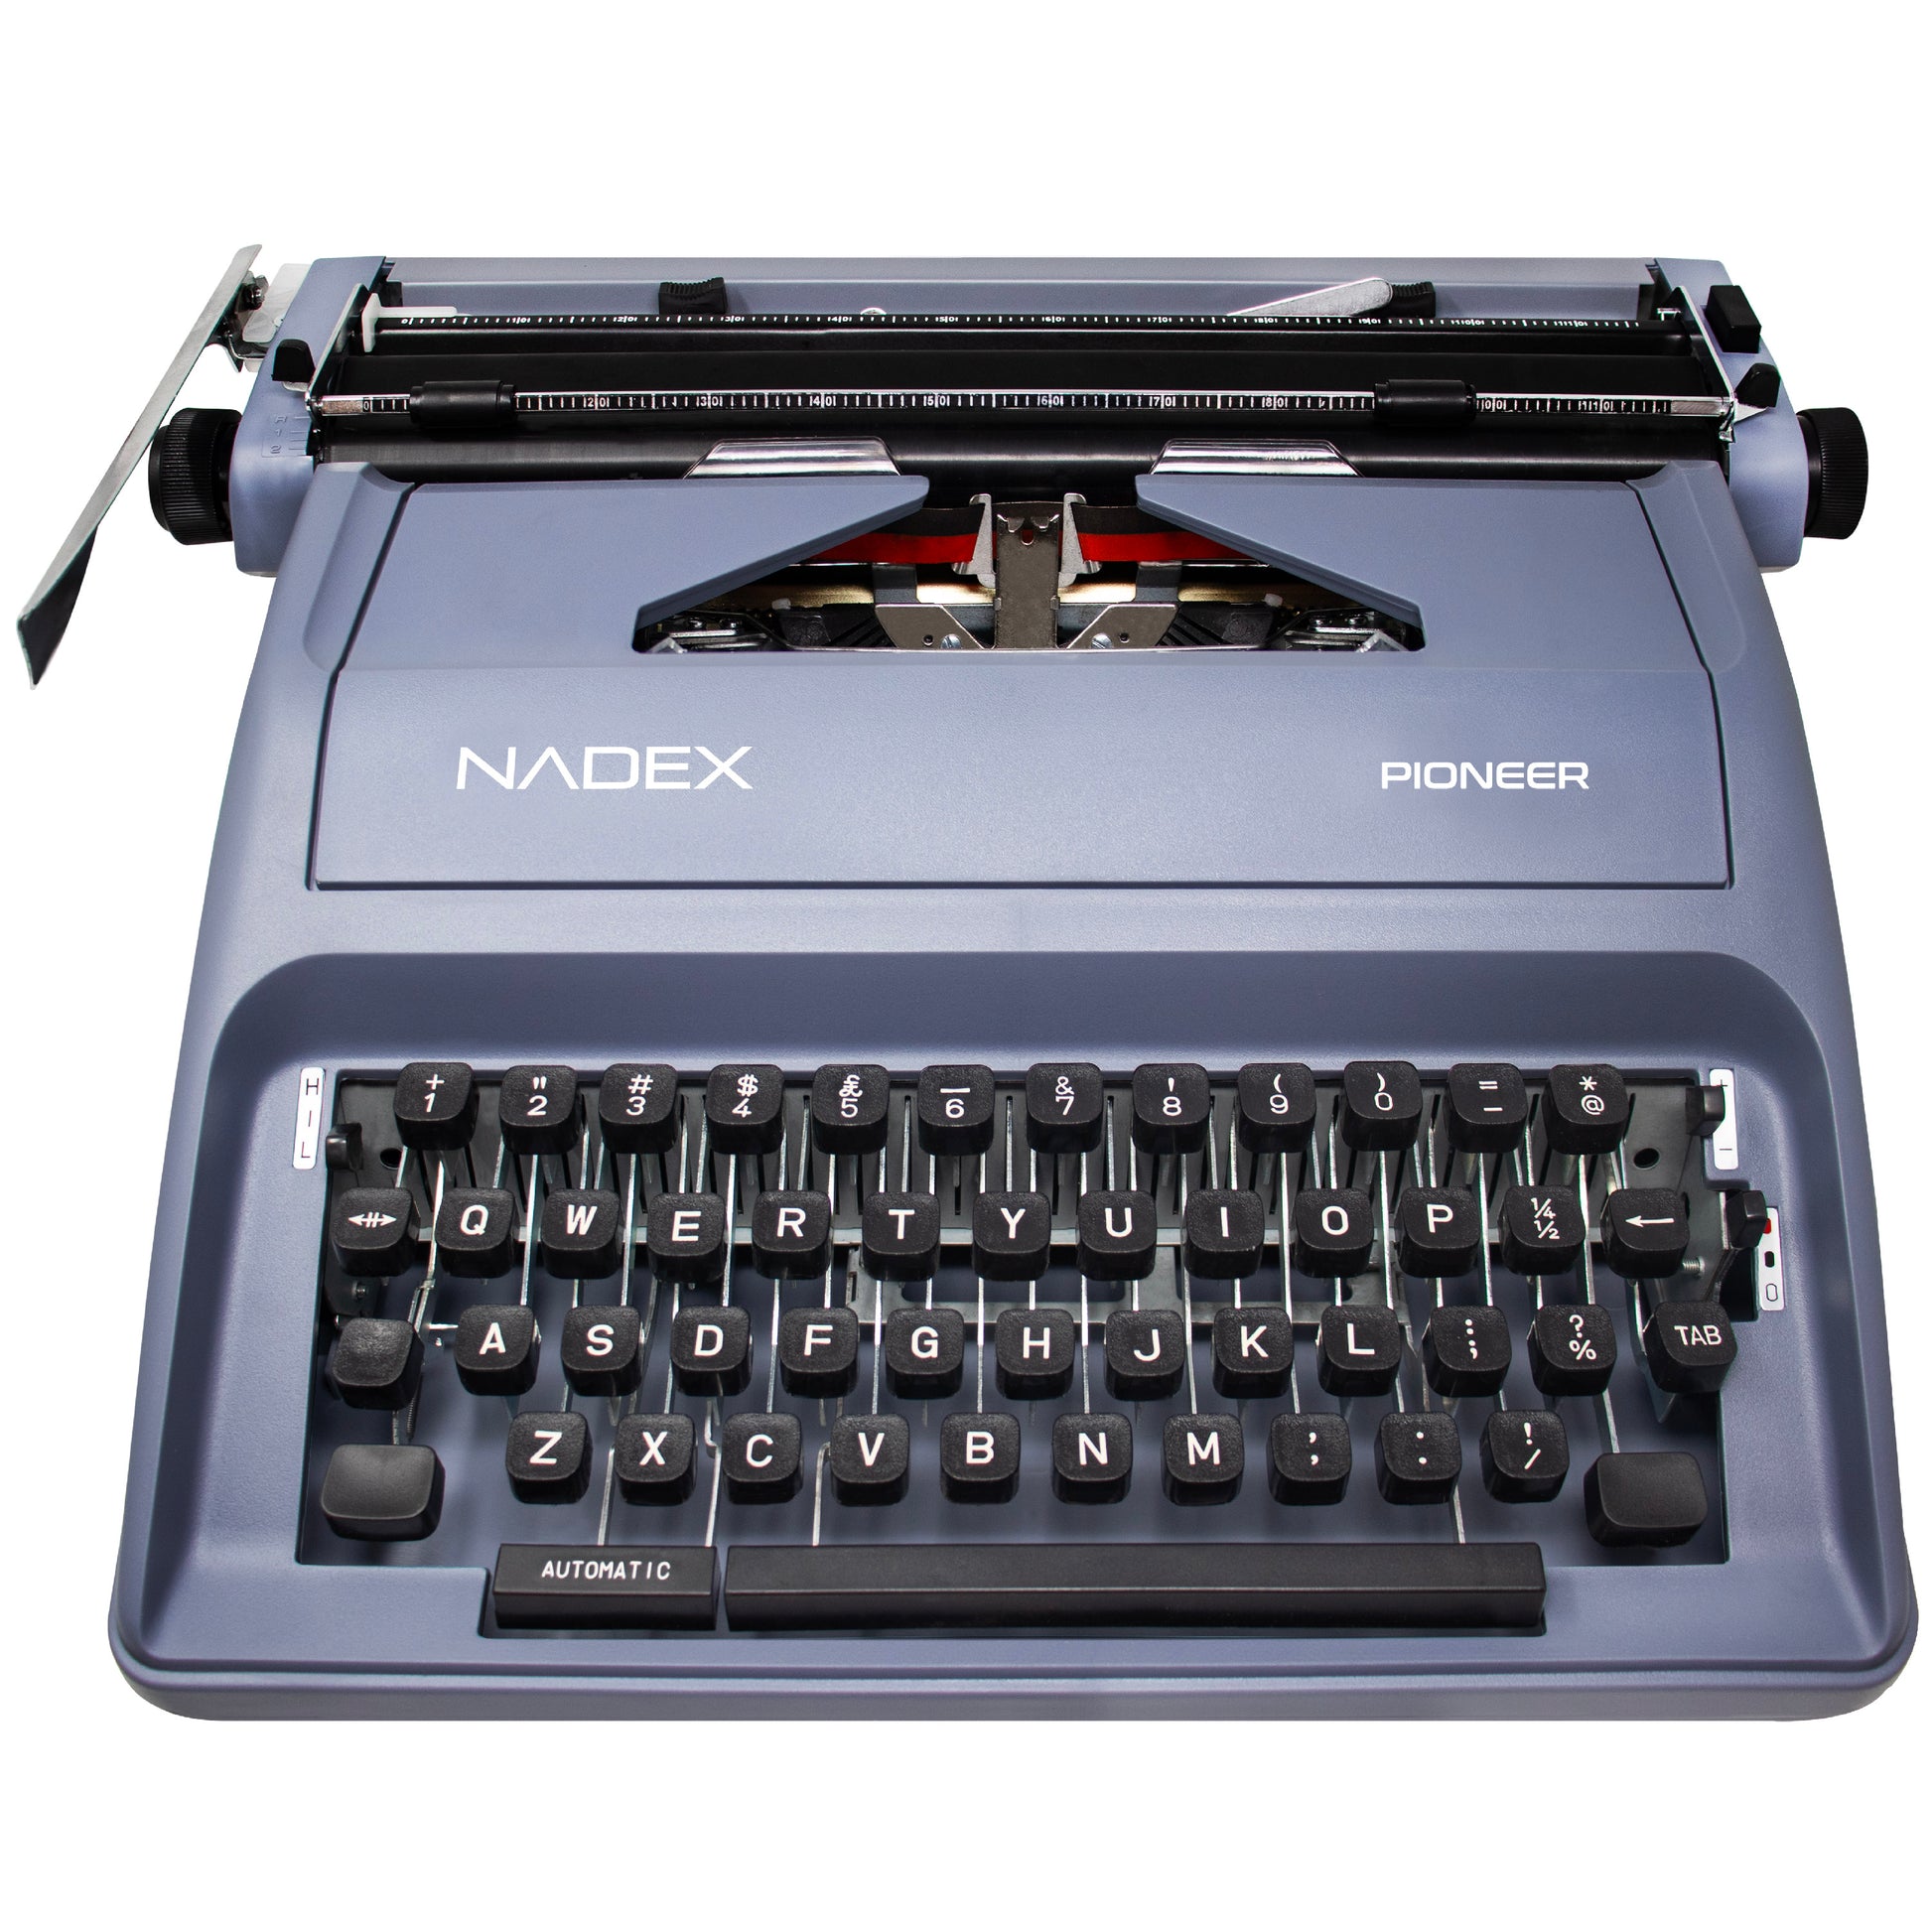 Royal Classic Manual Metal Typewriter Machine with Storage Case, Red